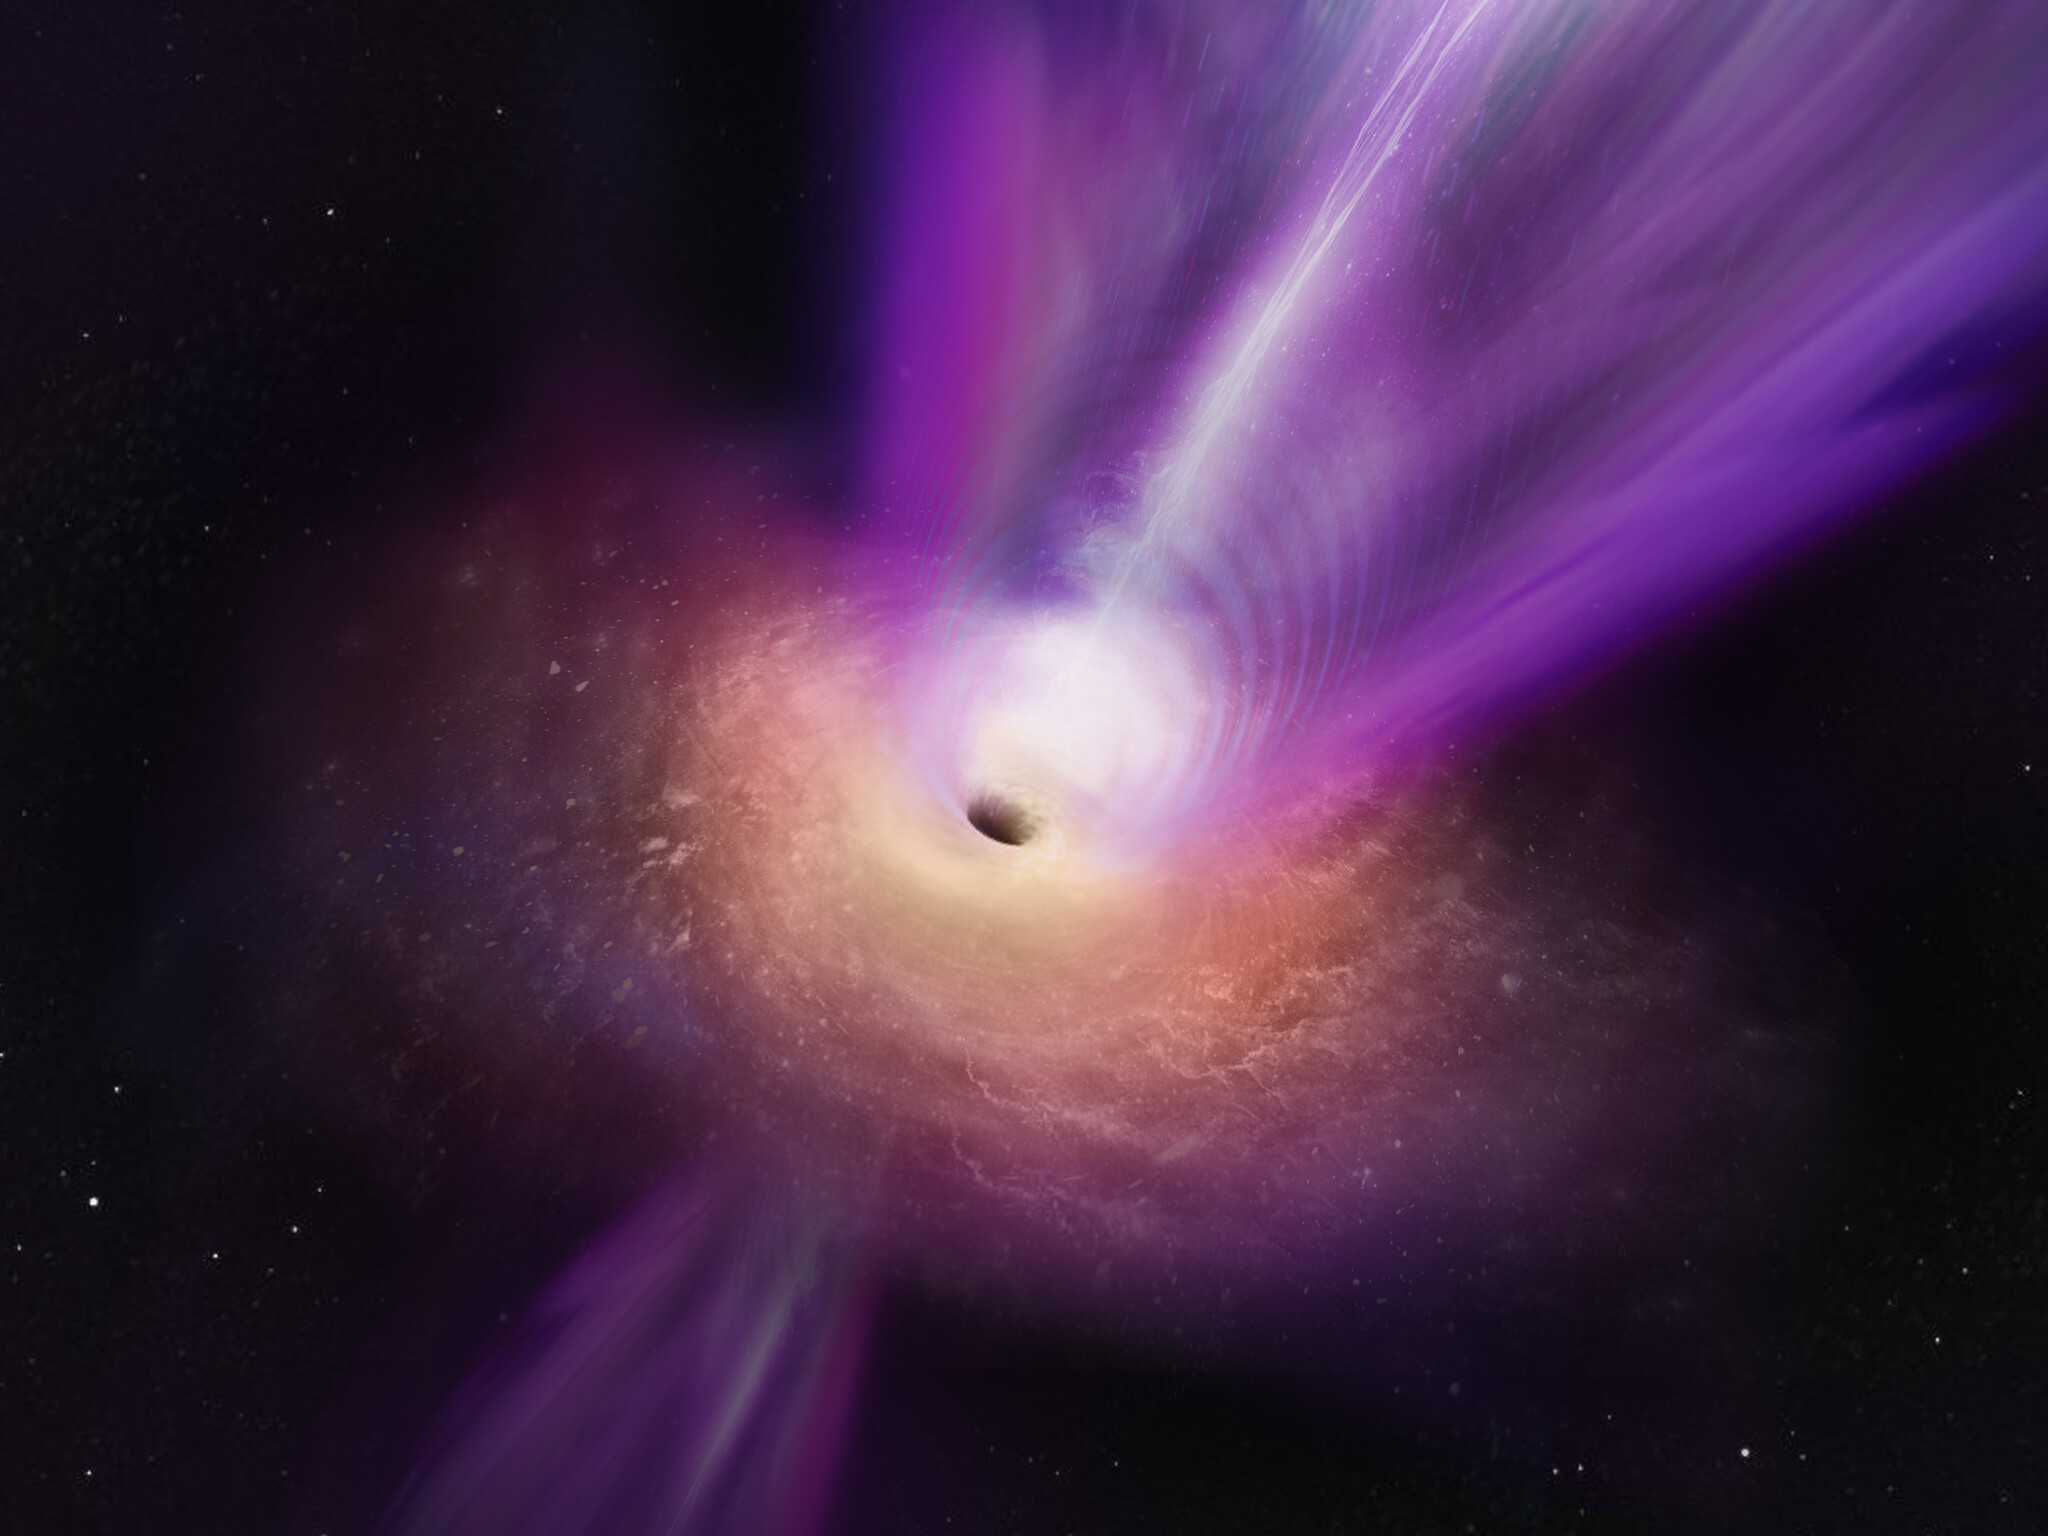 Les scientifiques qui observent le noyau radio compact de M87 ont découvert de nouveaux détails sur le trou noir supermassif de la galaxie. Sur cette vue d'artiste, on voit le jet massif du trou noir s'élever à partir du centre du trou noir. Les observations sur lesquelles se base cette illustration représentent la première fois que le jet et l'ombre du trou noir ont été photographiés ensemble, ce qui permet aux scientifiques de mieux comprendre comment les trous noirs peuvent propulser ces puissants jets. © S. Dagnello (NRAO, AUI, NSF) 